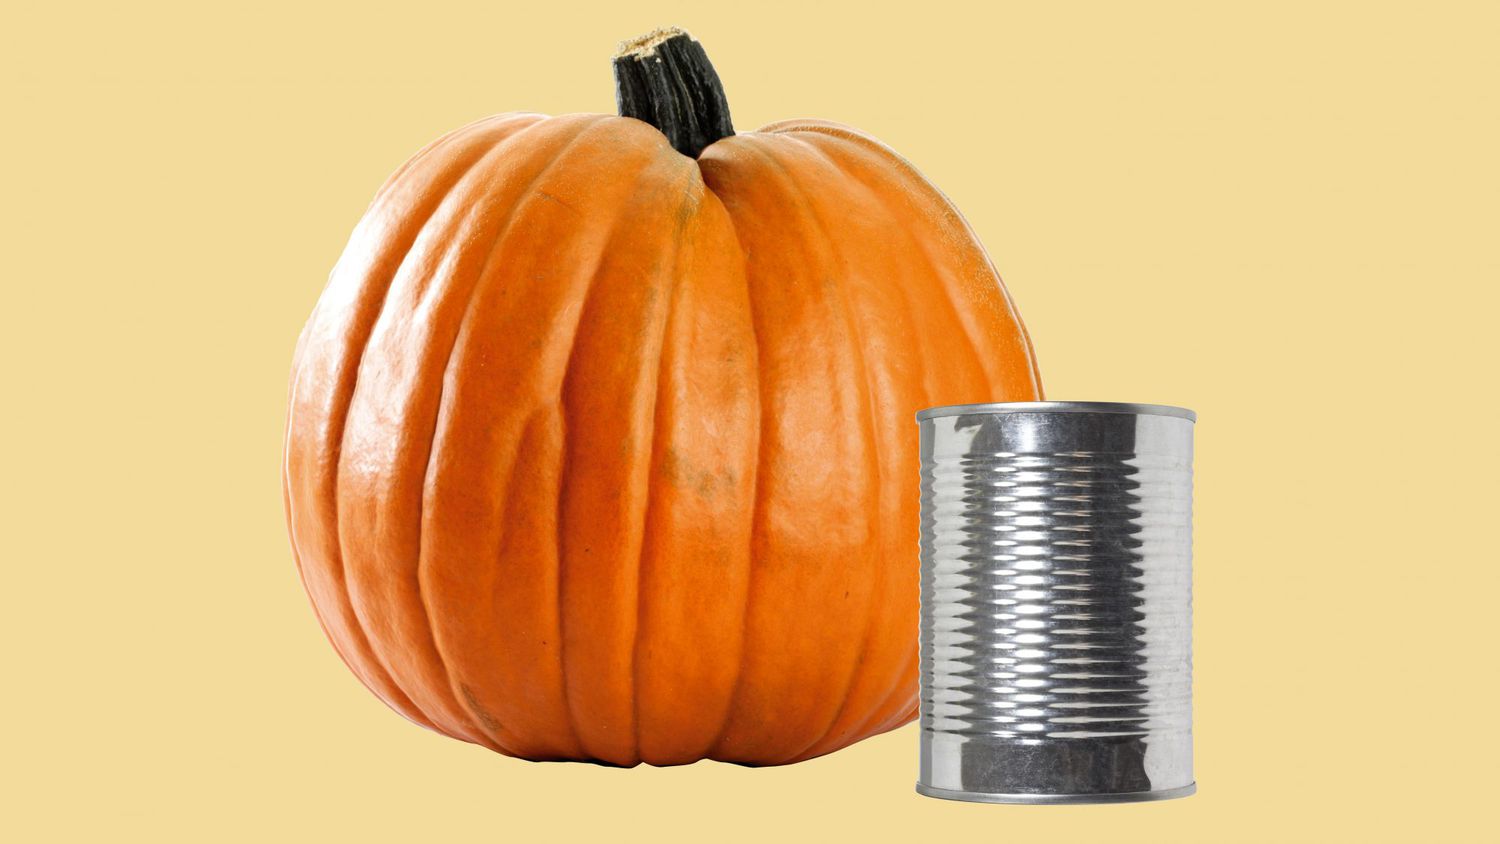 canned pumpkin vs. pumpkin pie mix